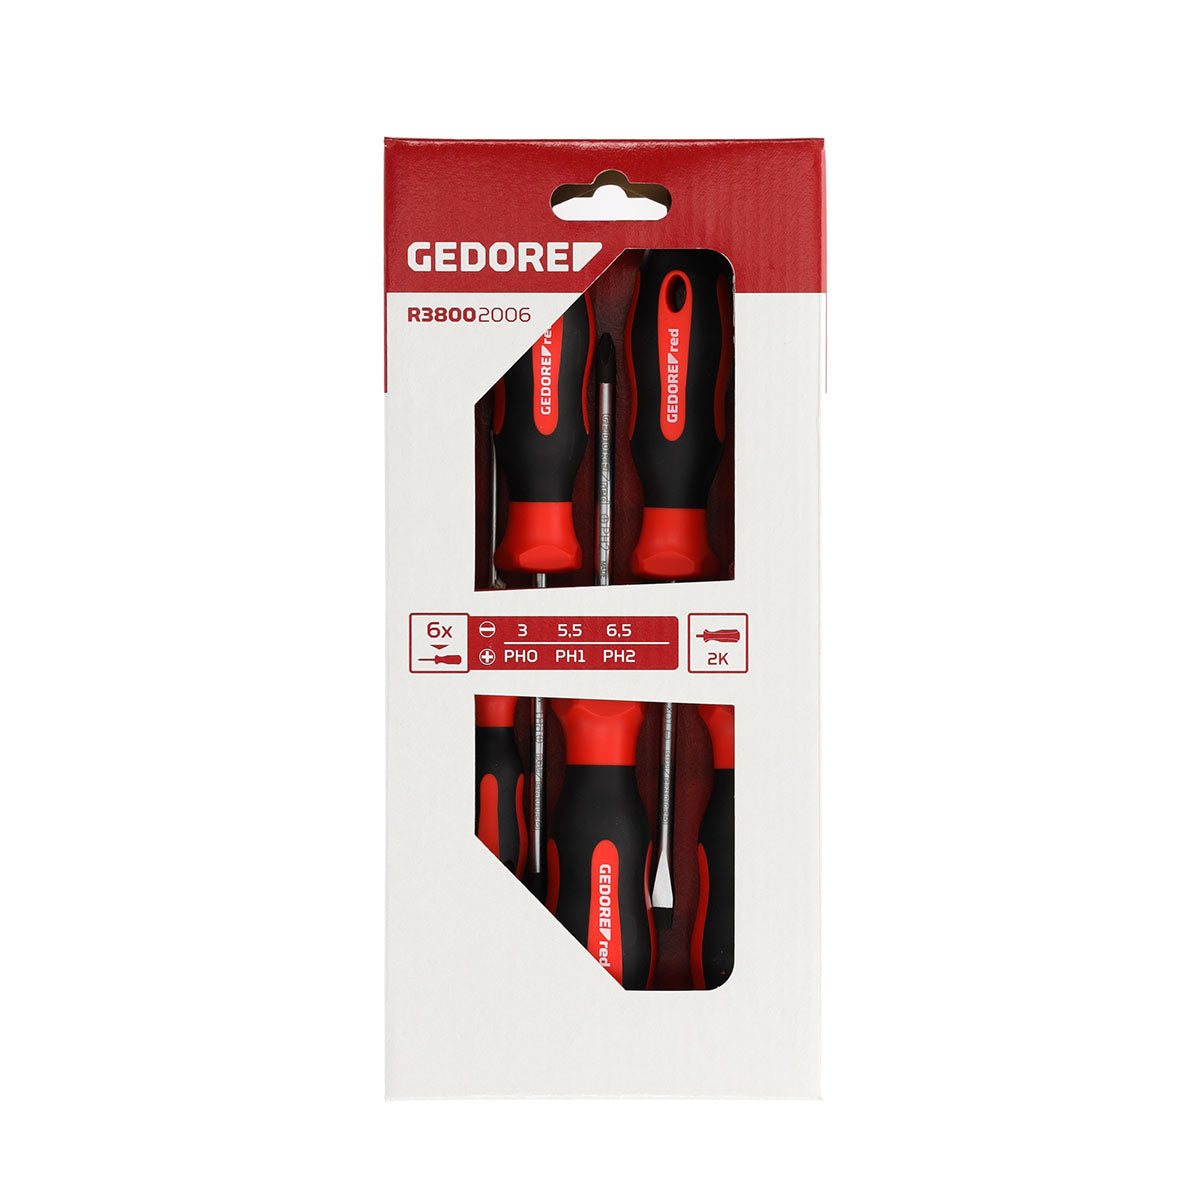 GEDORE red R38002006 - Juego de 6 destornilladores PH + Planos (3301270)